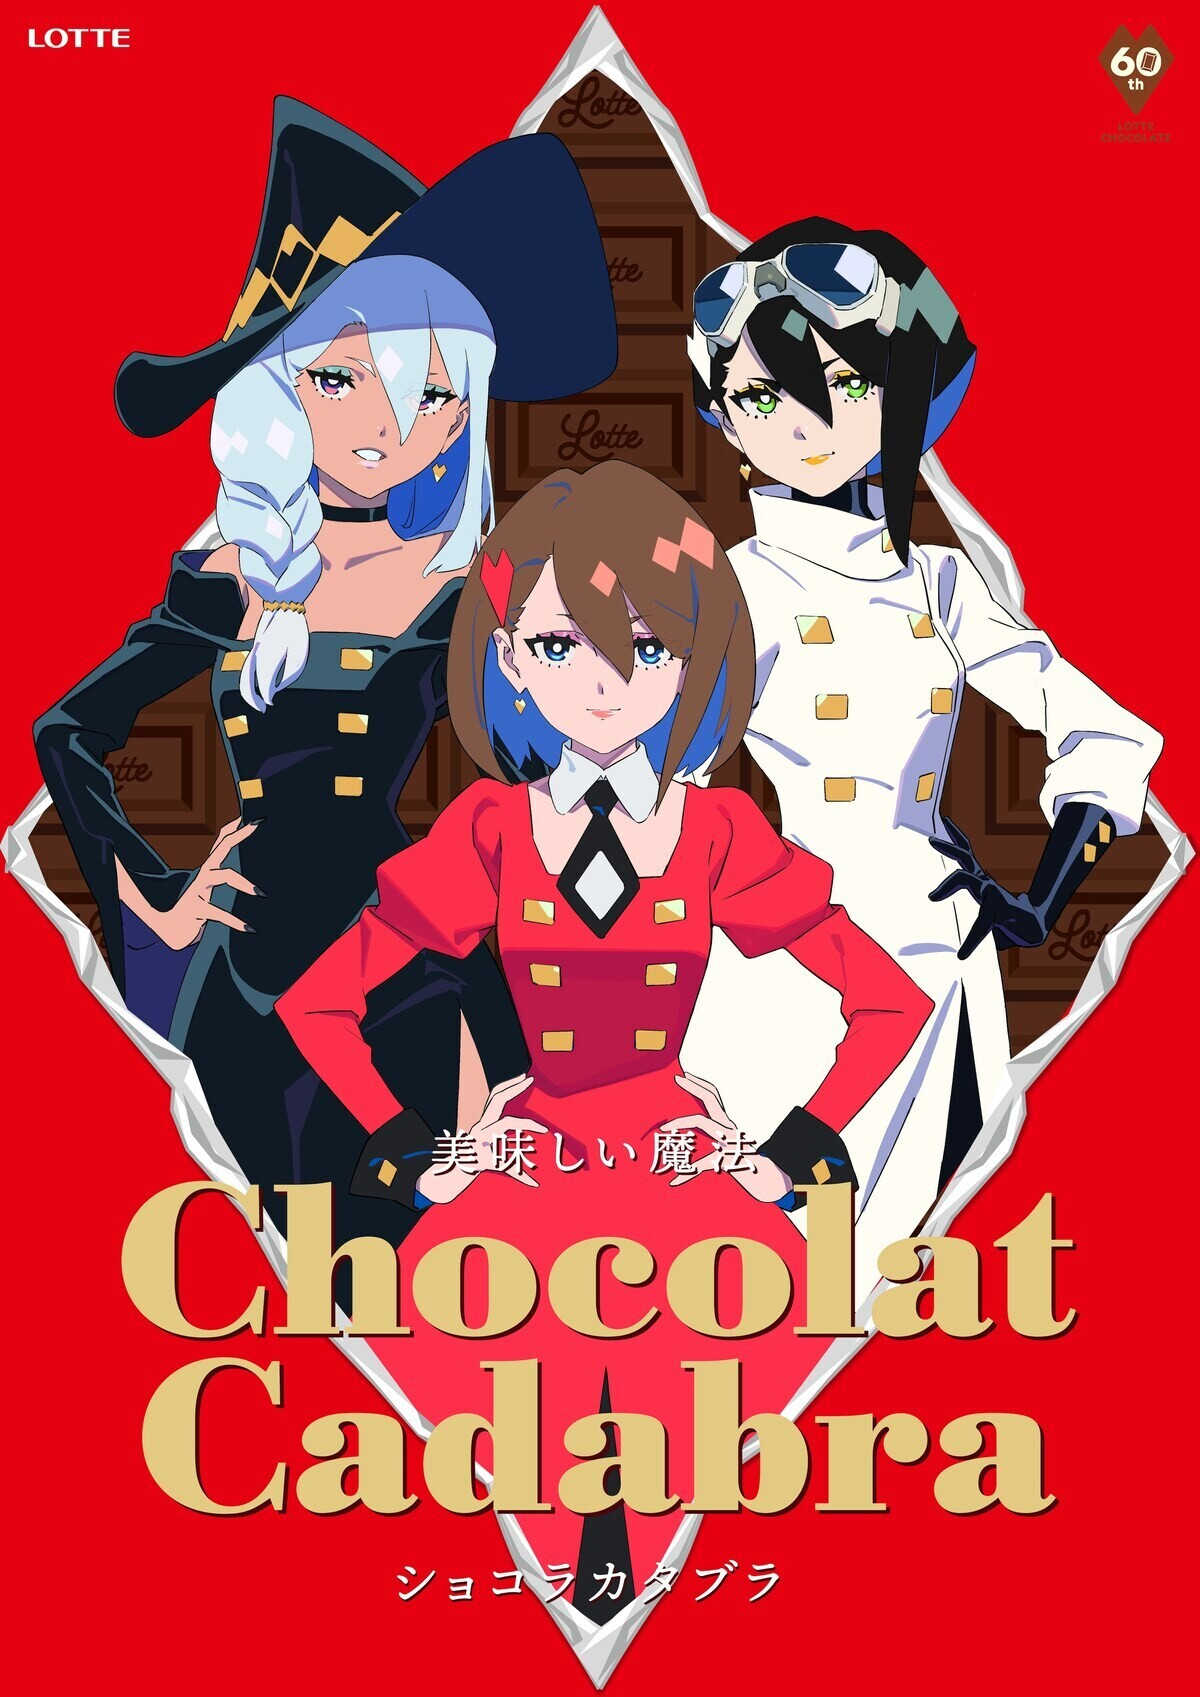 Trigger и режиссер «Академии ведьмочек» нарисовали вкусную рекламу шоколада к юбилею Lotte. Продано!